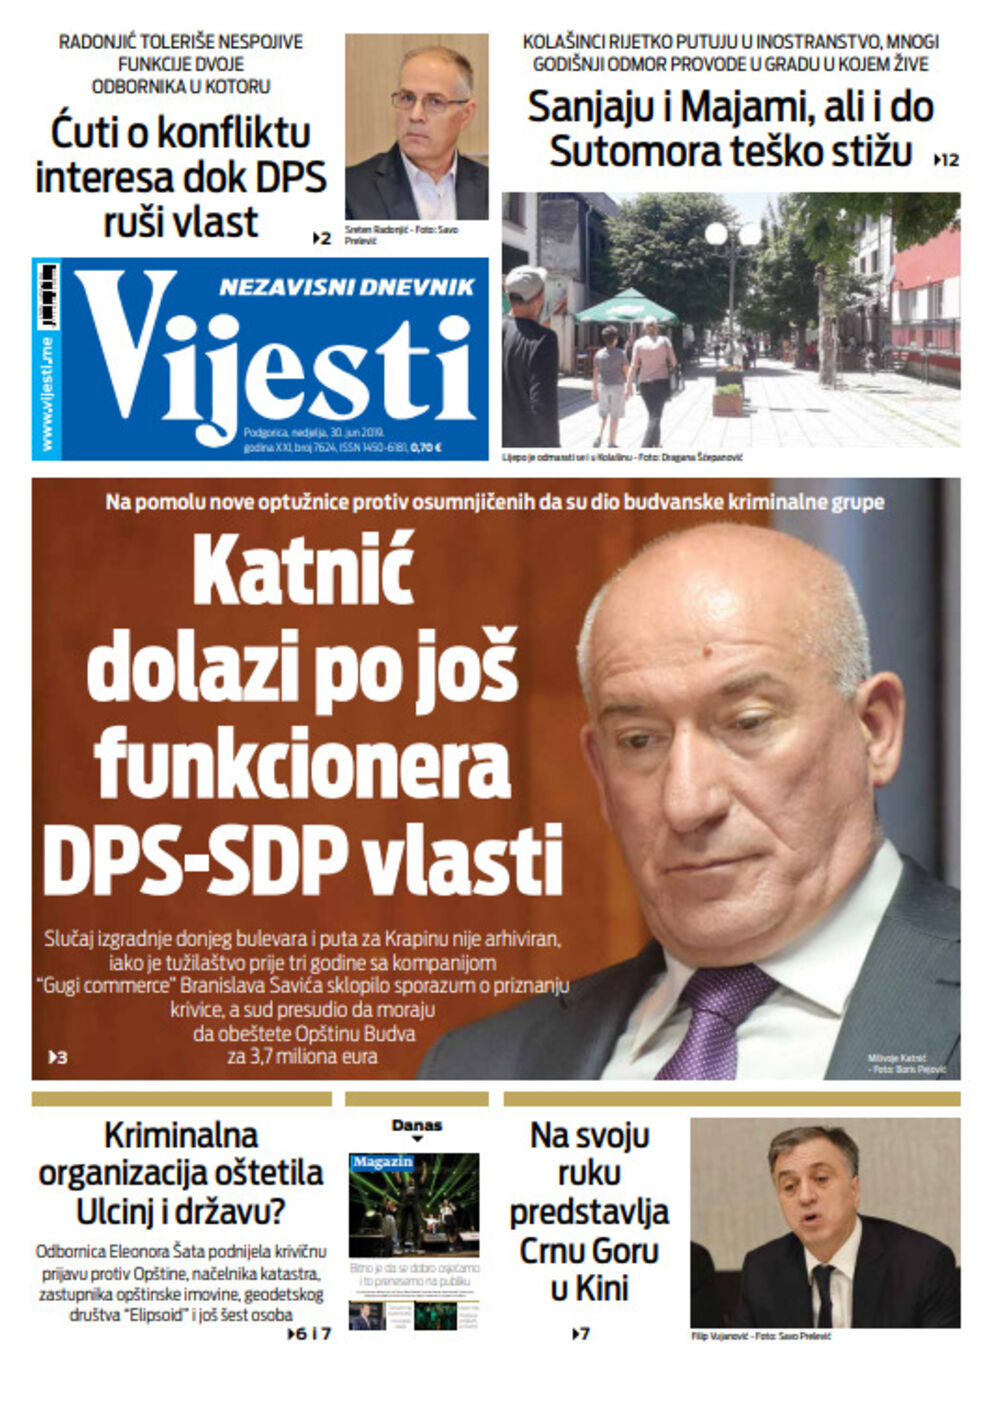 Naslovna strana "Vijesti" za 30. jun, Foto: Vijesti